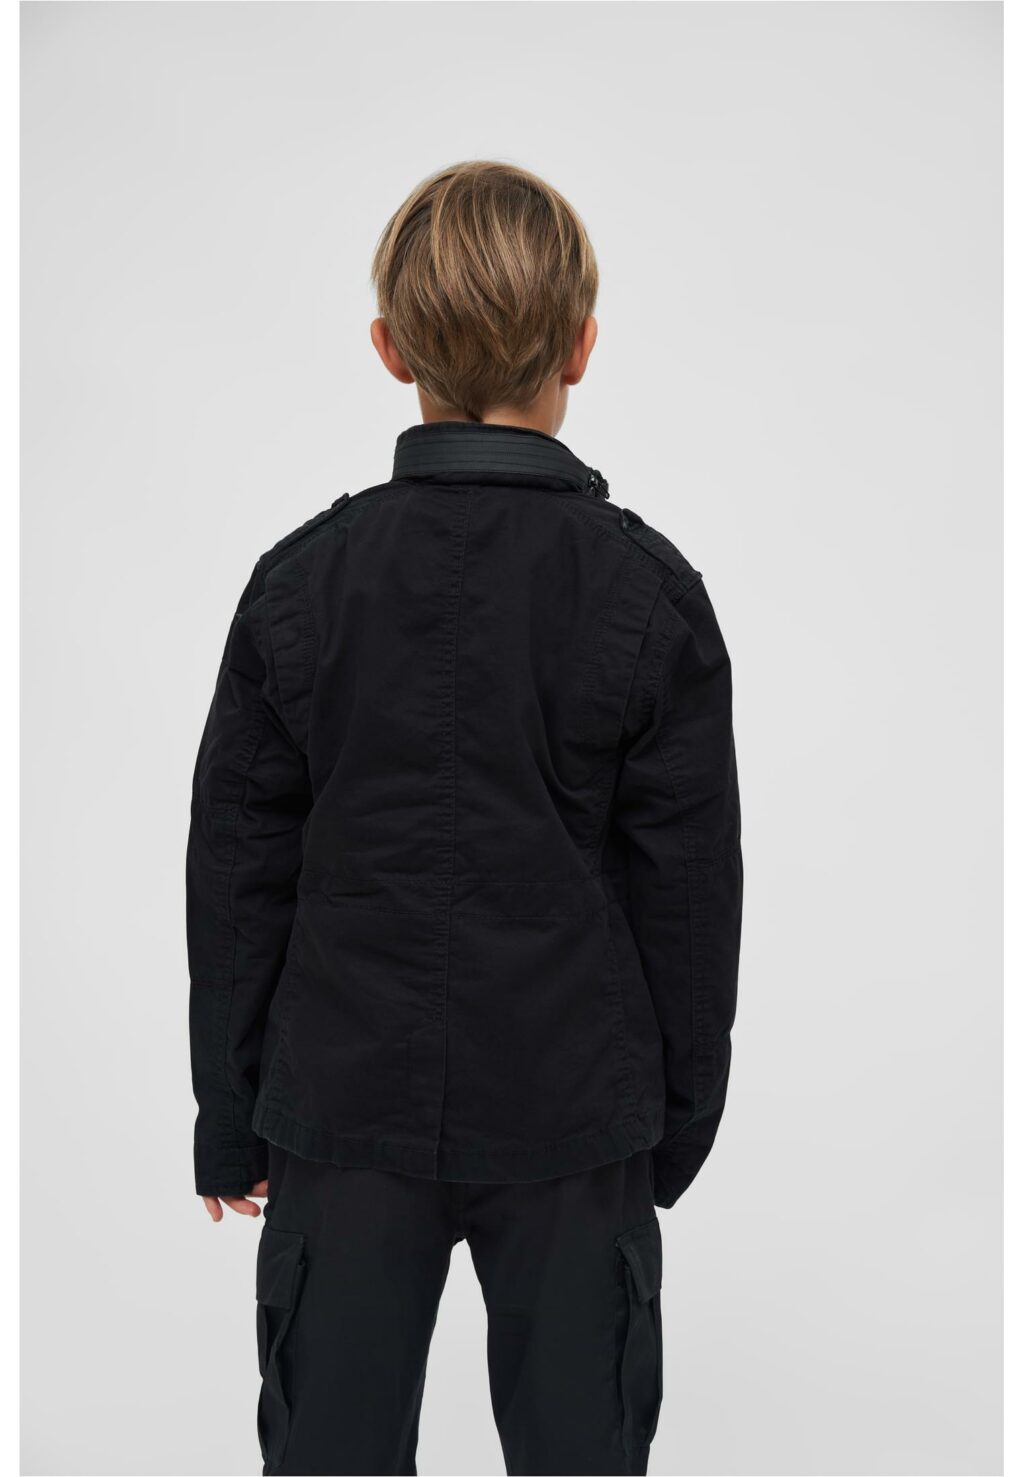 Brandit Kids Britannia Jacket black BD6014